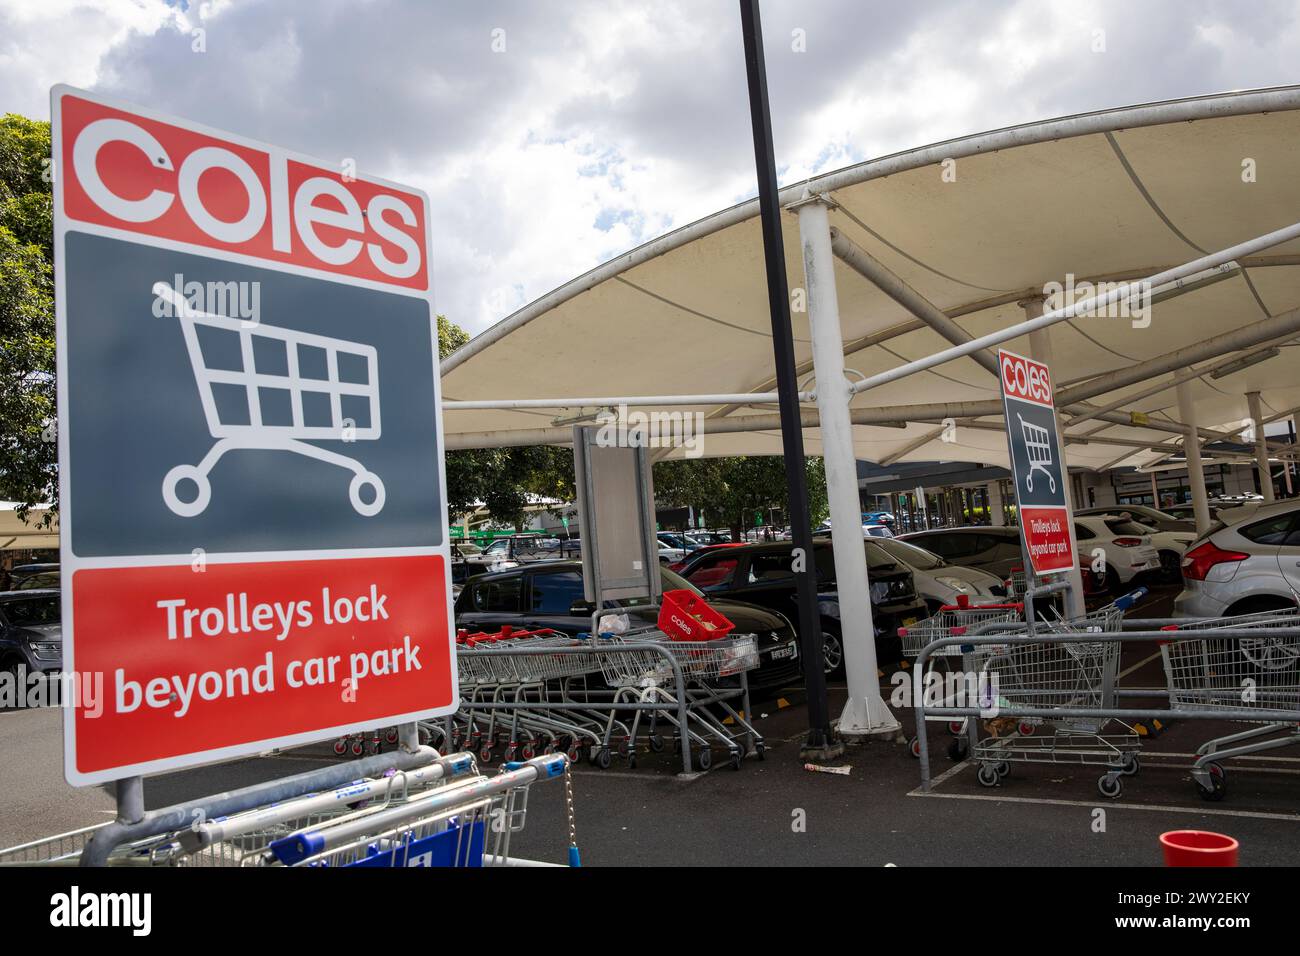 Supermercato Coles in Australia, Coles ha implementato la tecnologia per bloccare le ruote dei carrelli dei supermercati se lasciano il parcheggio per ridurre i furti Foto Stock